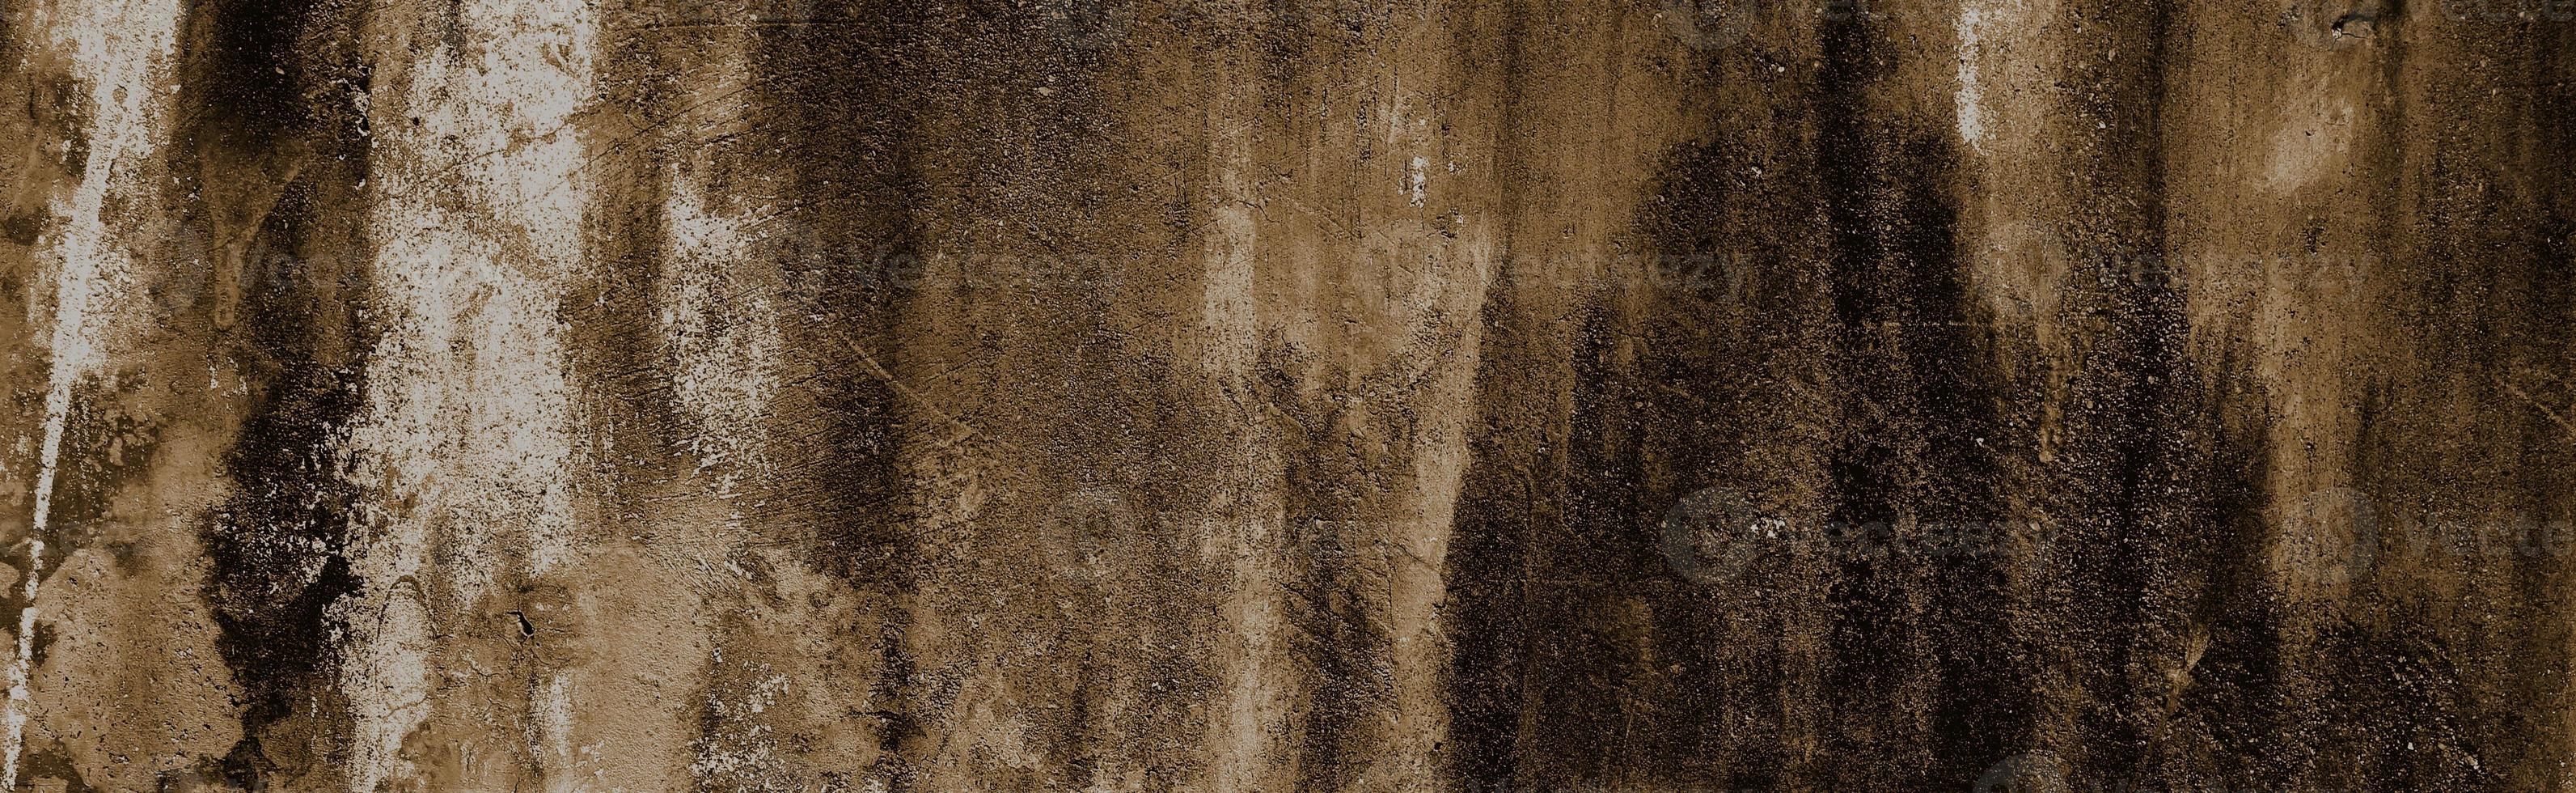 fundo panorâmico da parede de concreto. fundo de parede abstrata de pedra foto